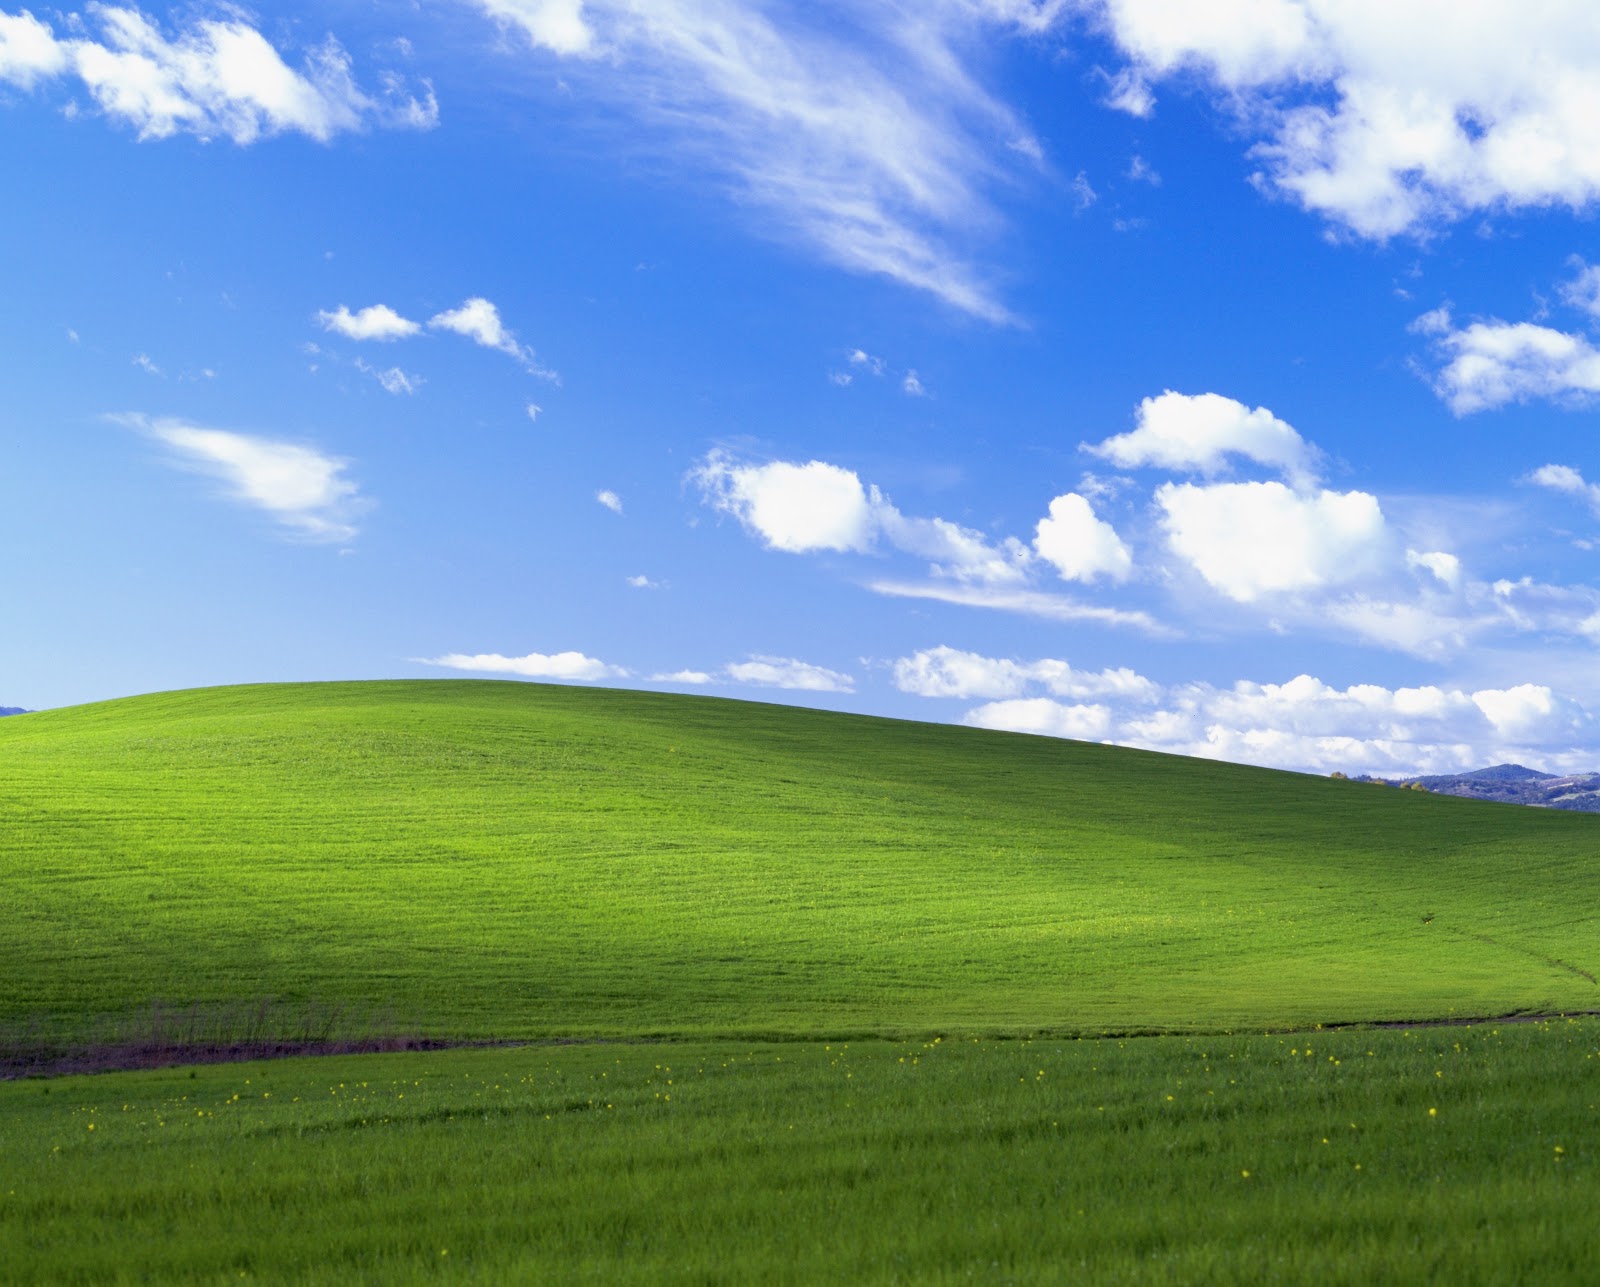 Hình nền Windows XP cũ: Hãy khám phá những ký ức tuổi thơ với hình nền Windows XP cũ. Với những đường cong quen thuộc và gam màu đặc trưng, hình nền này sẽ mang đến cho bạn cảm giác quay trở về quá khứ. Nhấp để tải về và trang trí cho màn hình máy tính của bạn ngay bây giờ!